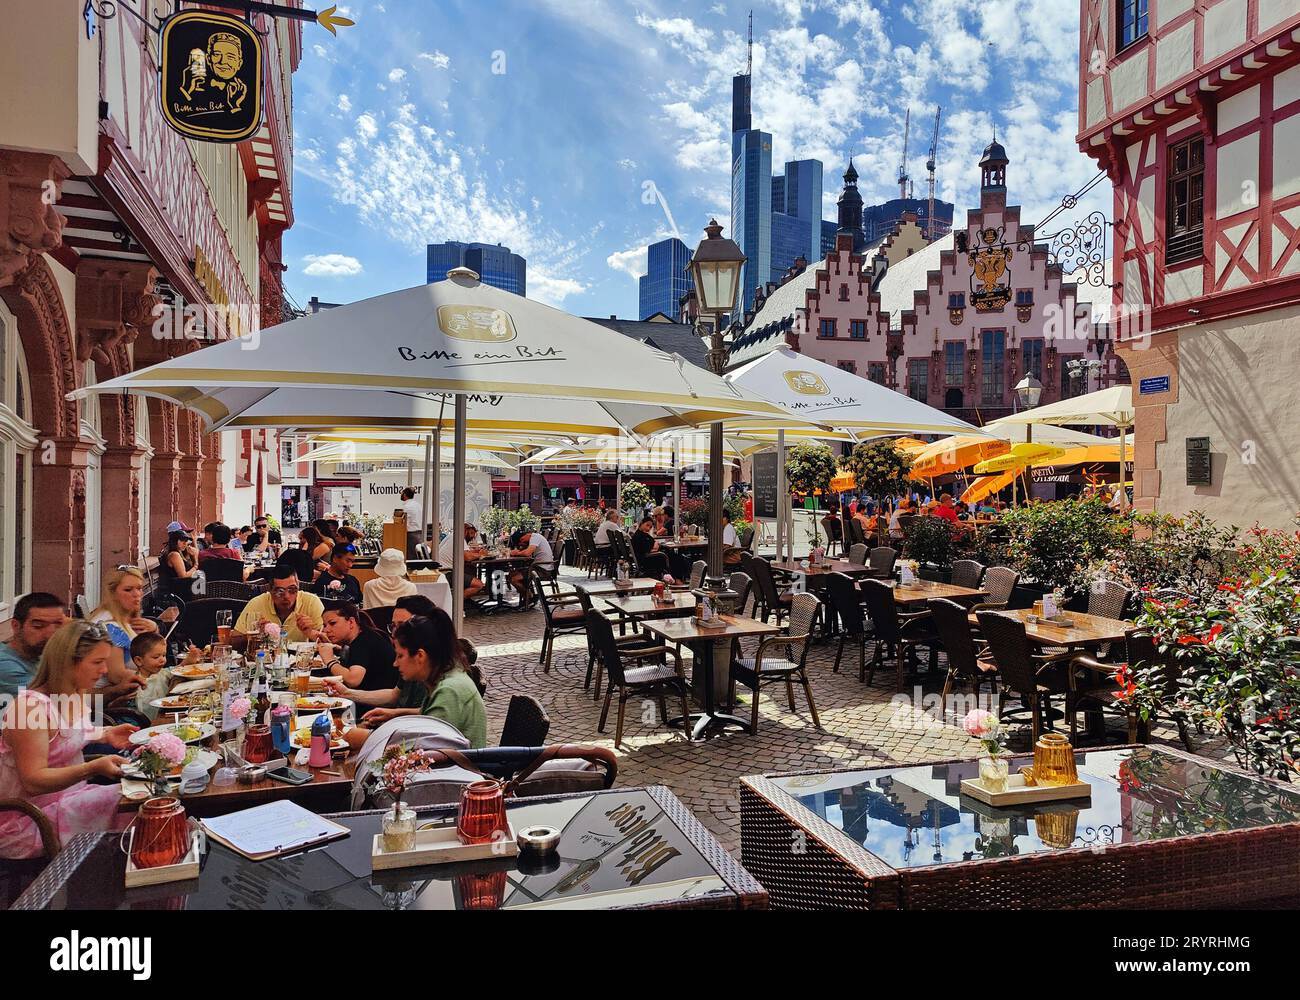 Les gens dans la gastronomie de plein air avec l'Hôtel de ville et Commerzbank, Francfort-sur-le-main, Allemagne, Europe Banque D'Images